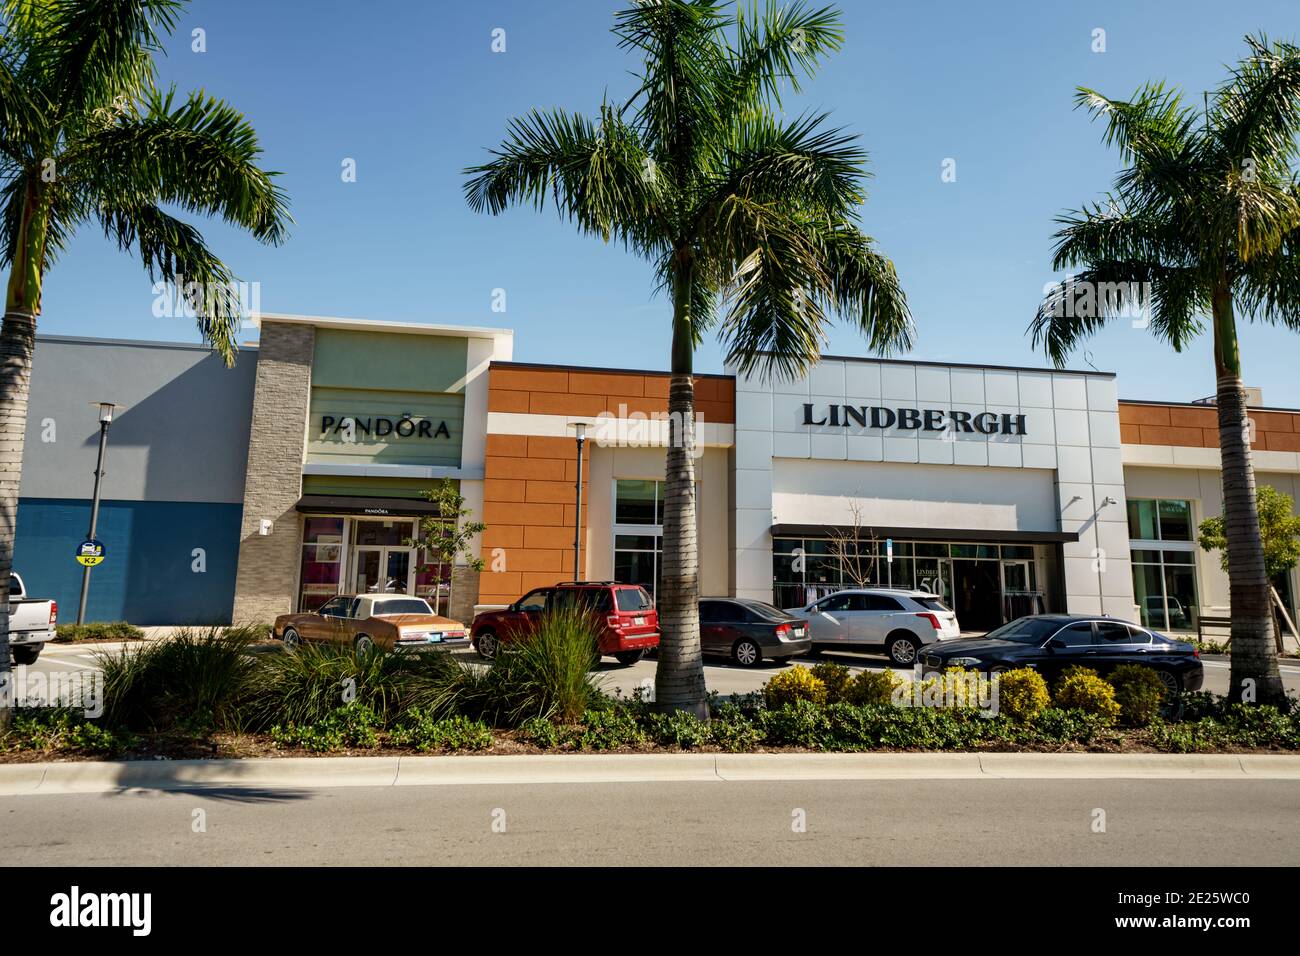 Gehobene Einzelhandelsgeschäfte Pandora und Lindbergh in Dania Pointe Shops Florida USA Stockfoto